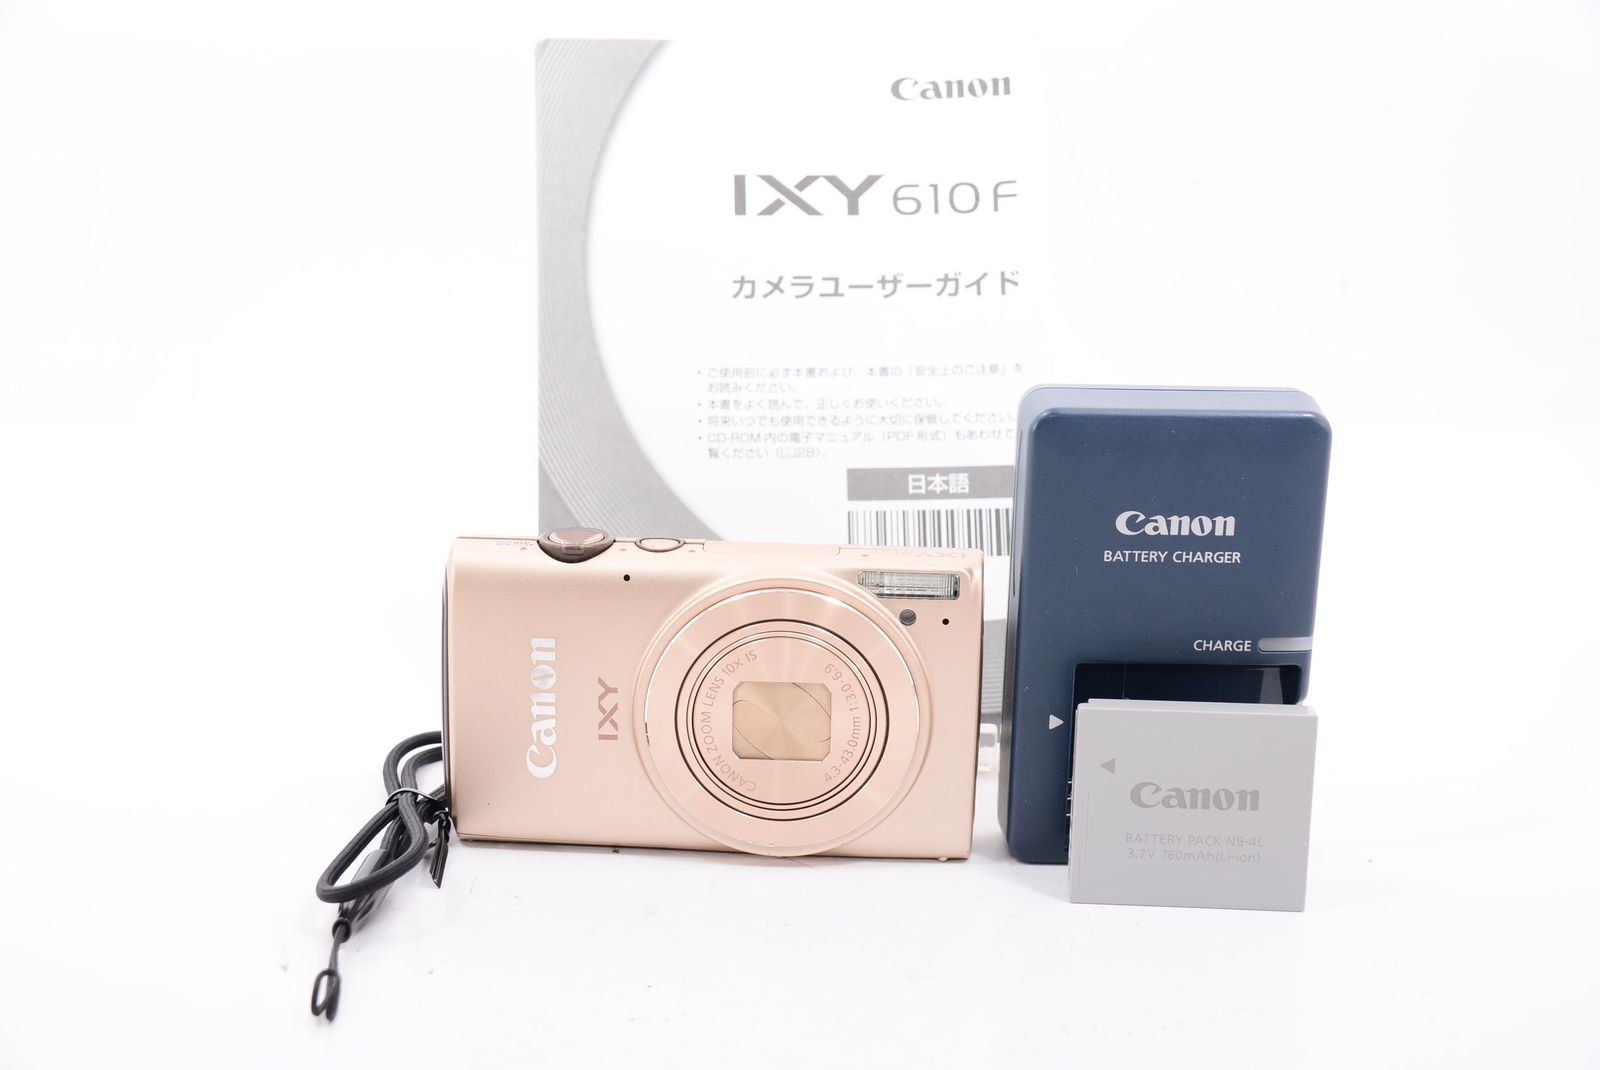 外観特上級】Canon デジタルカメラ IXY 610F - メルカリ